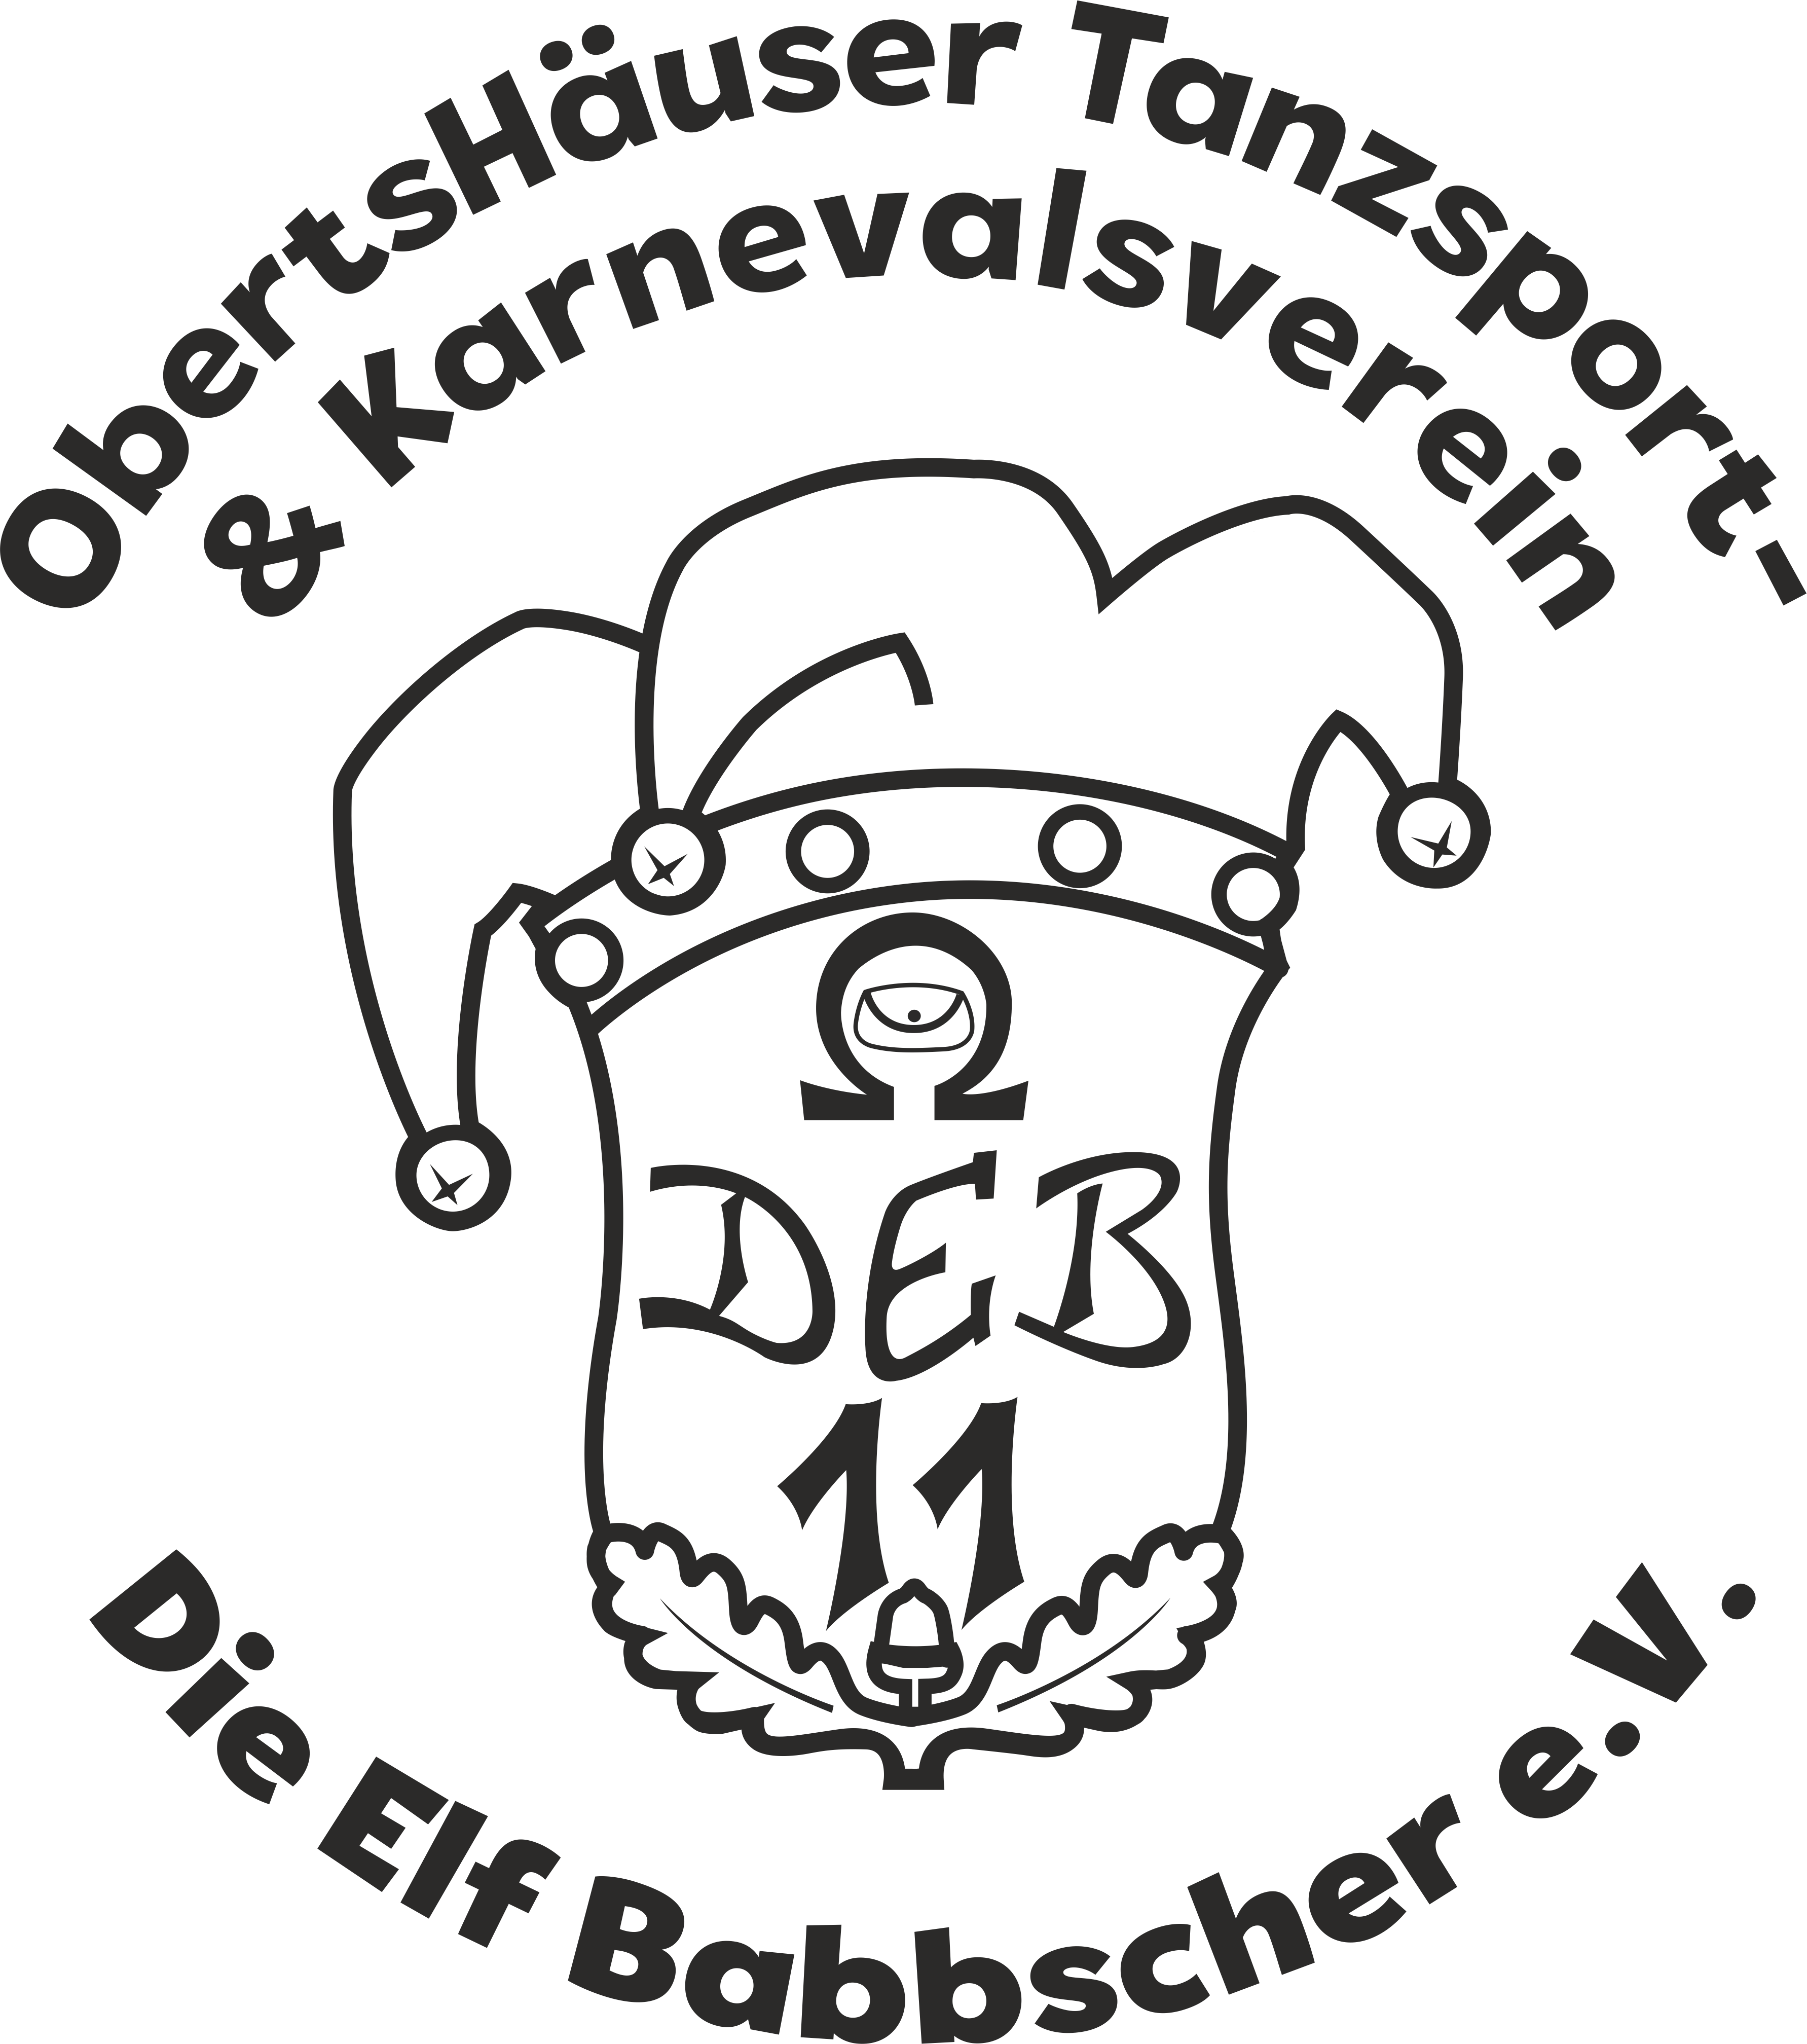 Die 11 Babbscher Obertshausen Logo